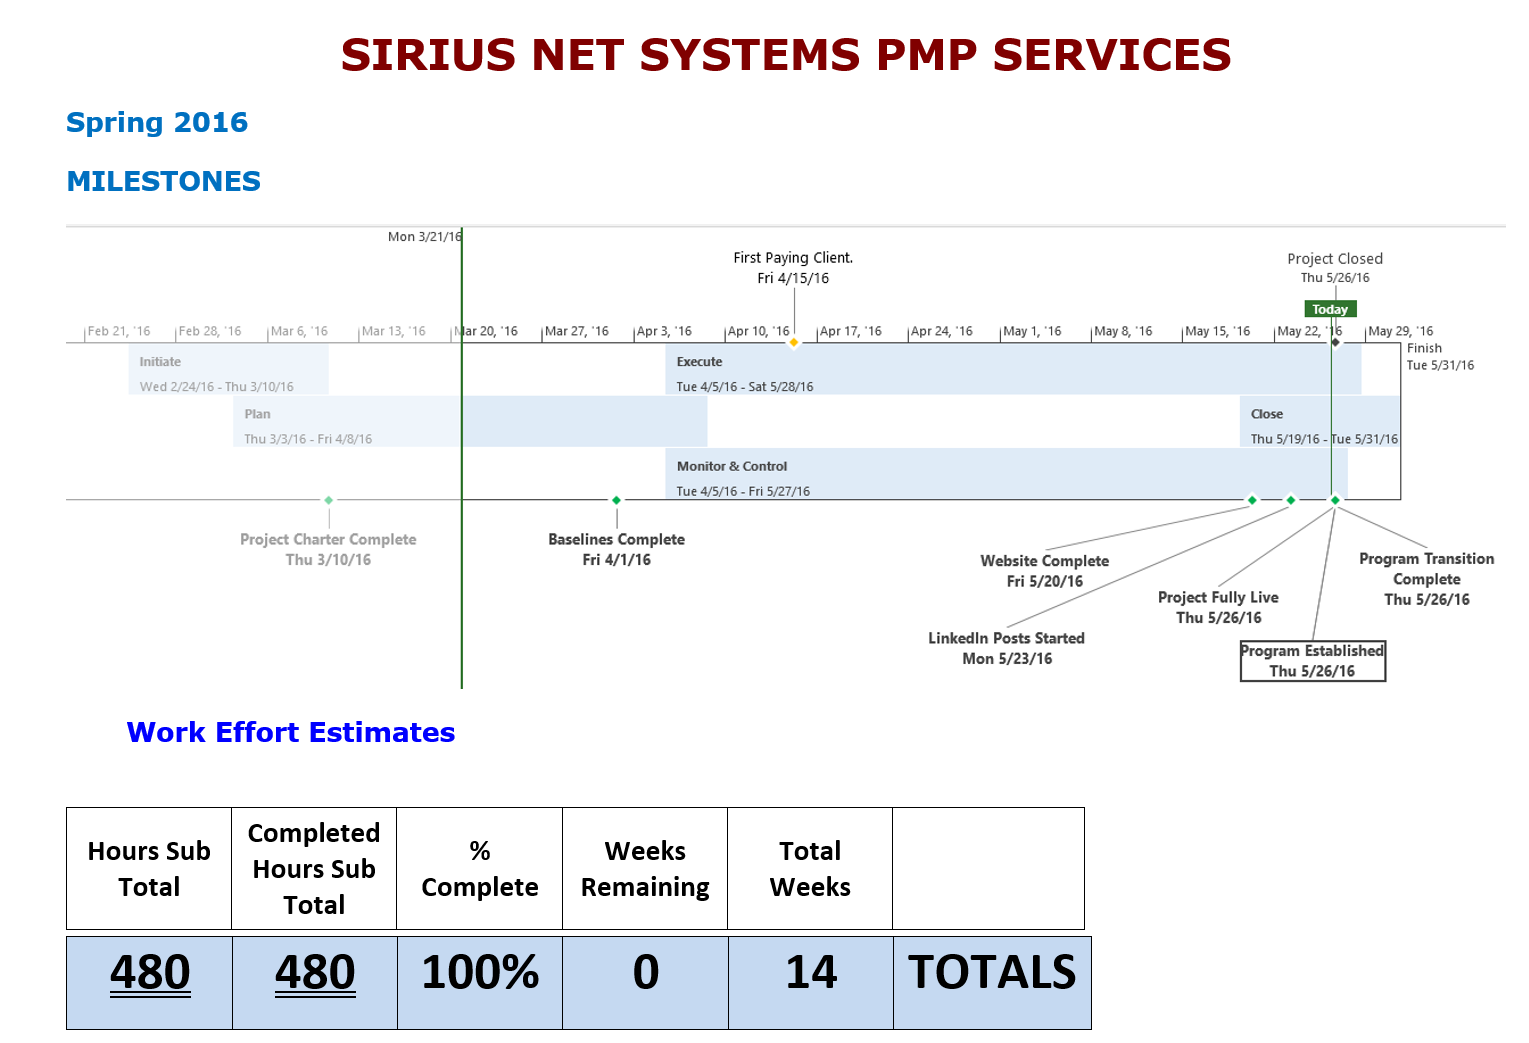 SNS PMP Services Project Milestones